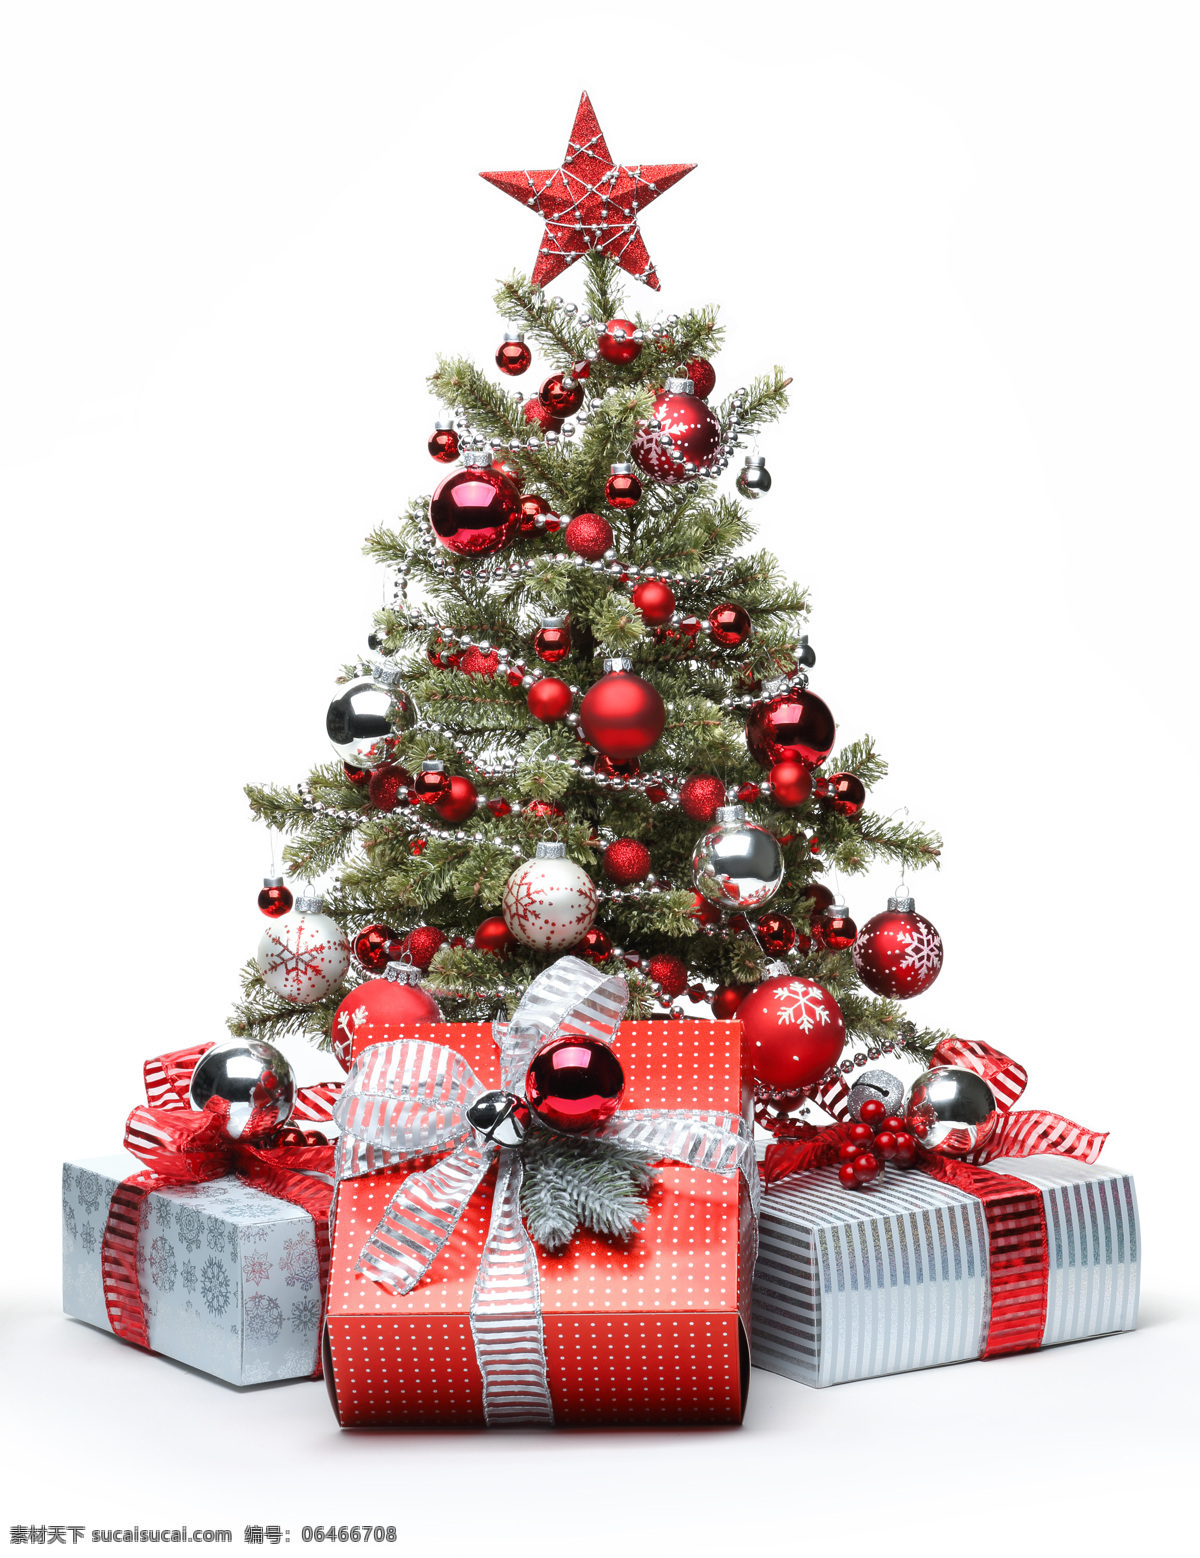 漂亮 圣诞树 礼包 礼物包 漂亮礼包 漂亮圣诞树 圣诞元素 圣诞主题 节日庆典 生活百科